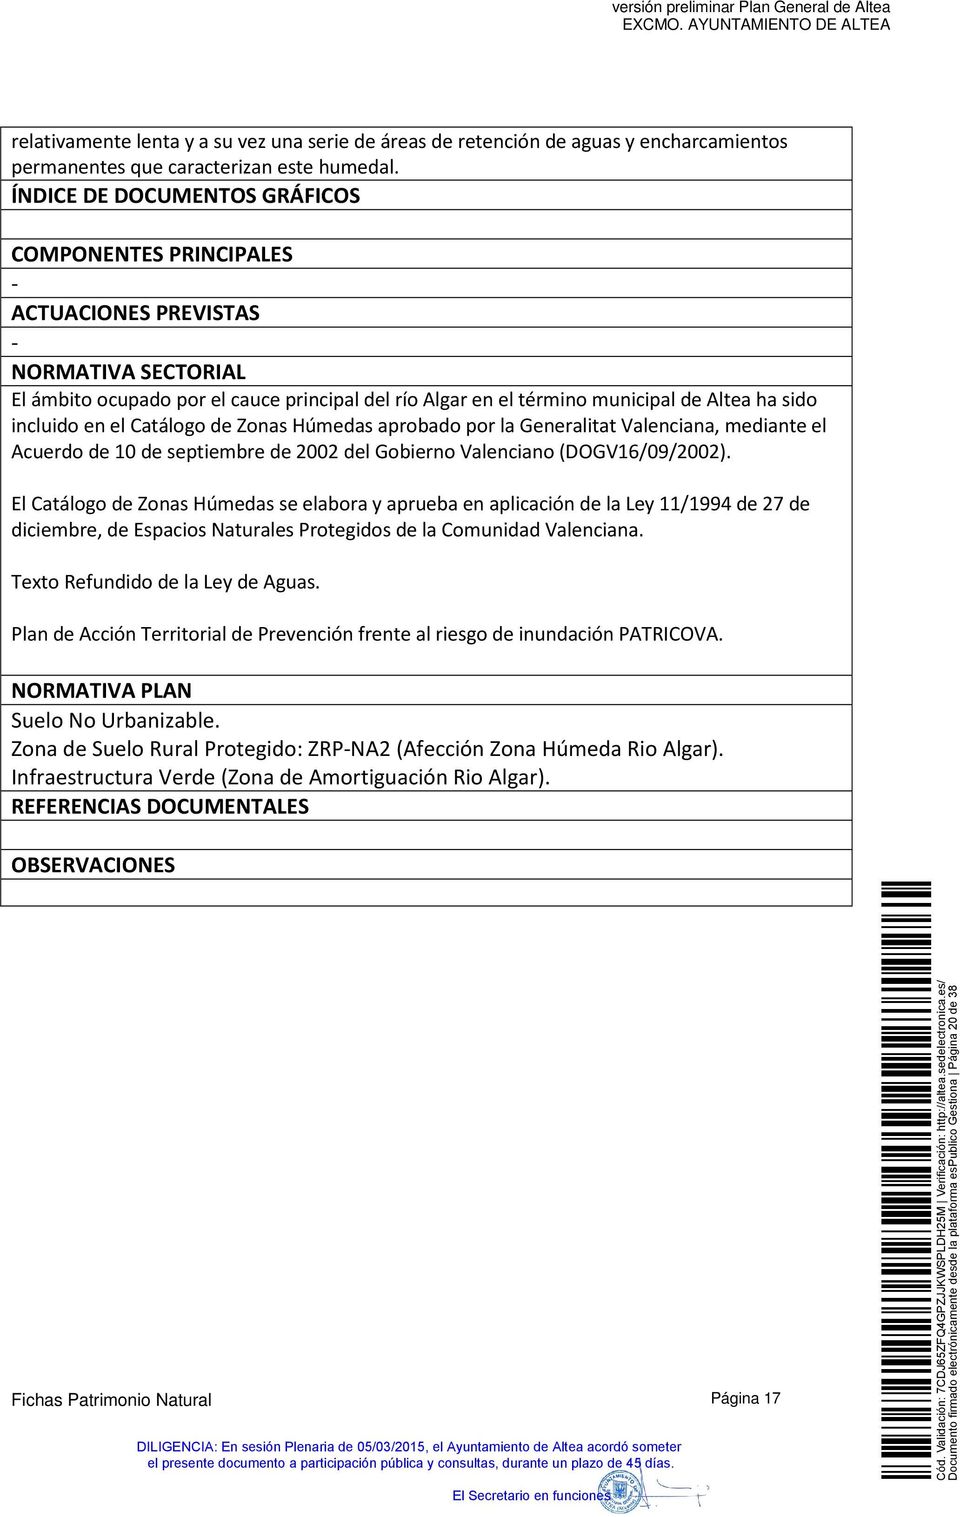 incluido en el Catálogo de Zonas Húmedas aprobado por la Generalitat Valenciana, mediante el Acuerdo de 10 de septiembre de 2002 del Gobierno Valenciano (DOGV16/09/2002).